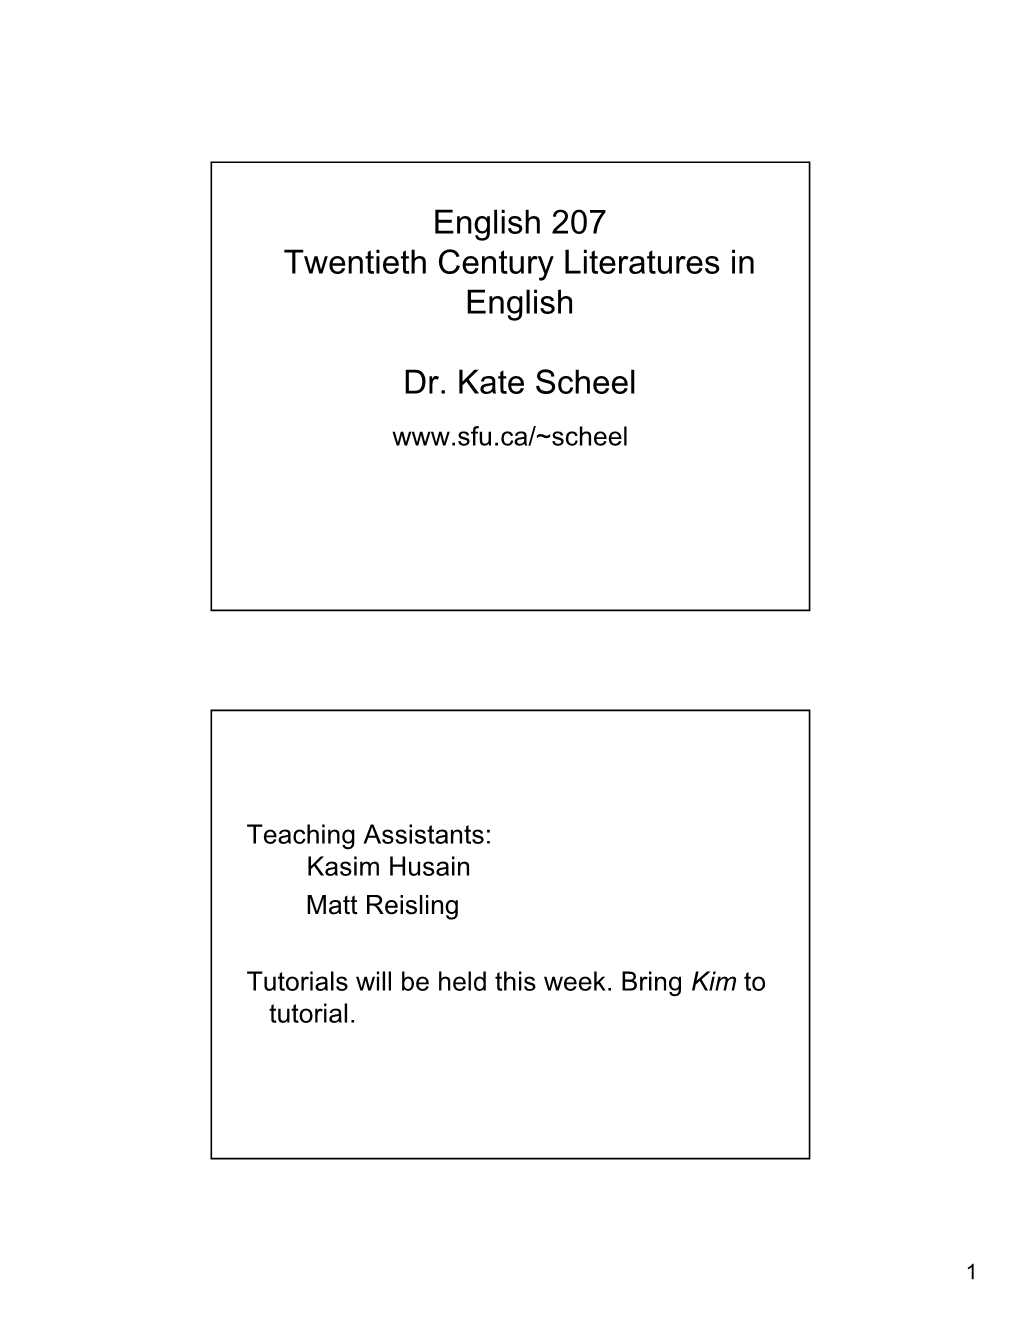 English 207 Twentieth Century Literatures in English Dr. Kate Scheel